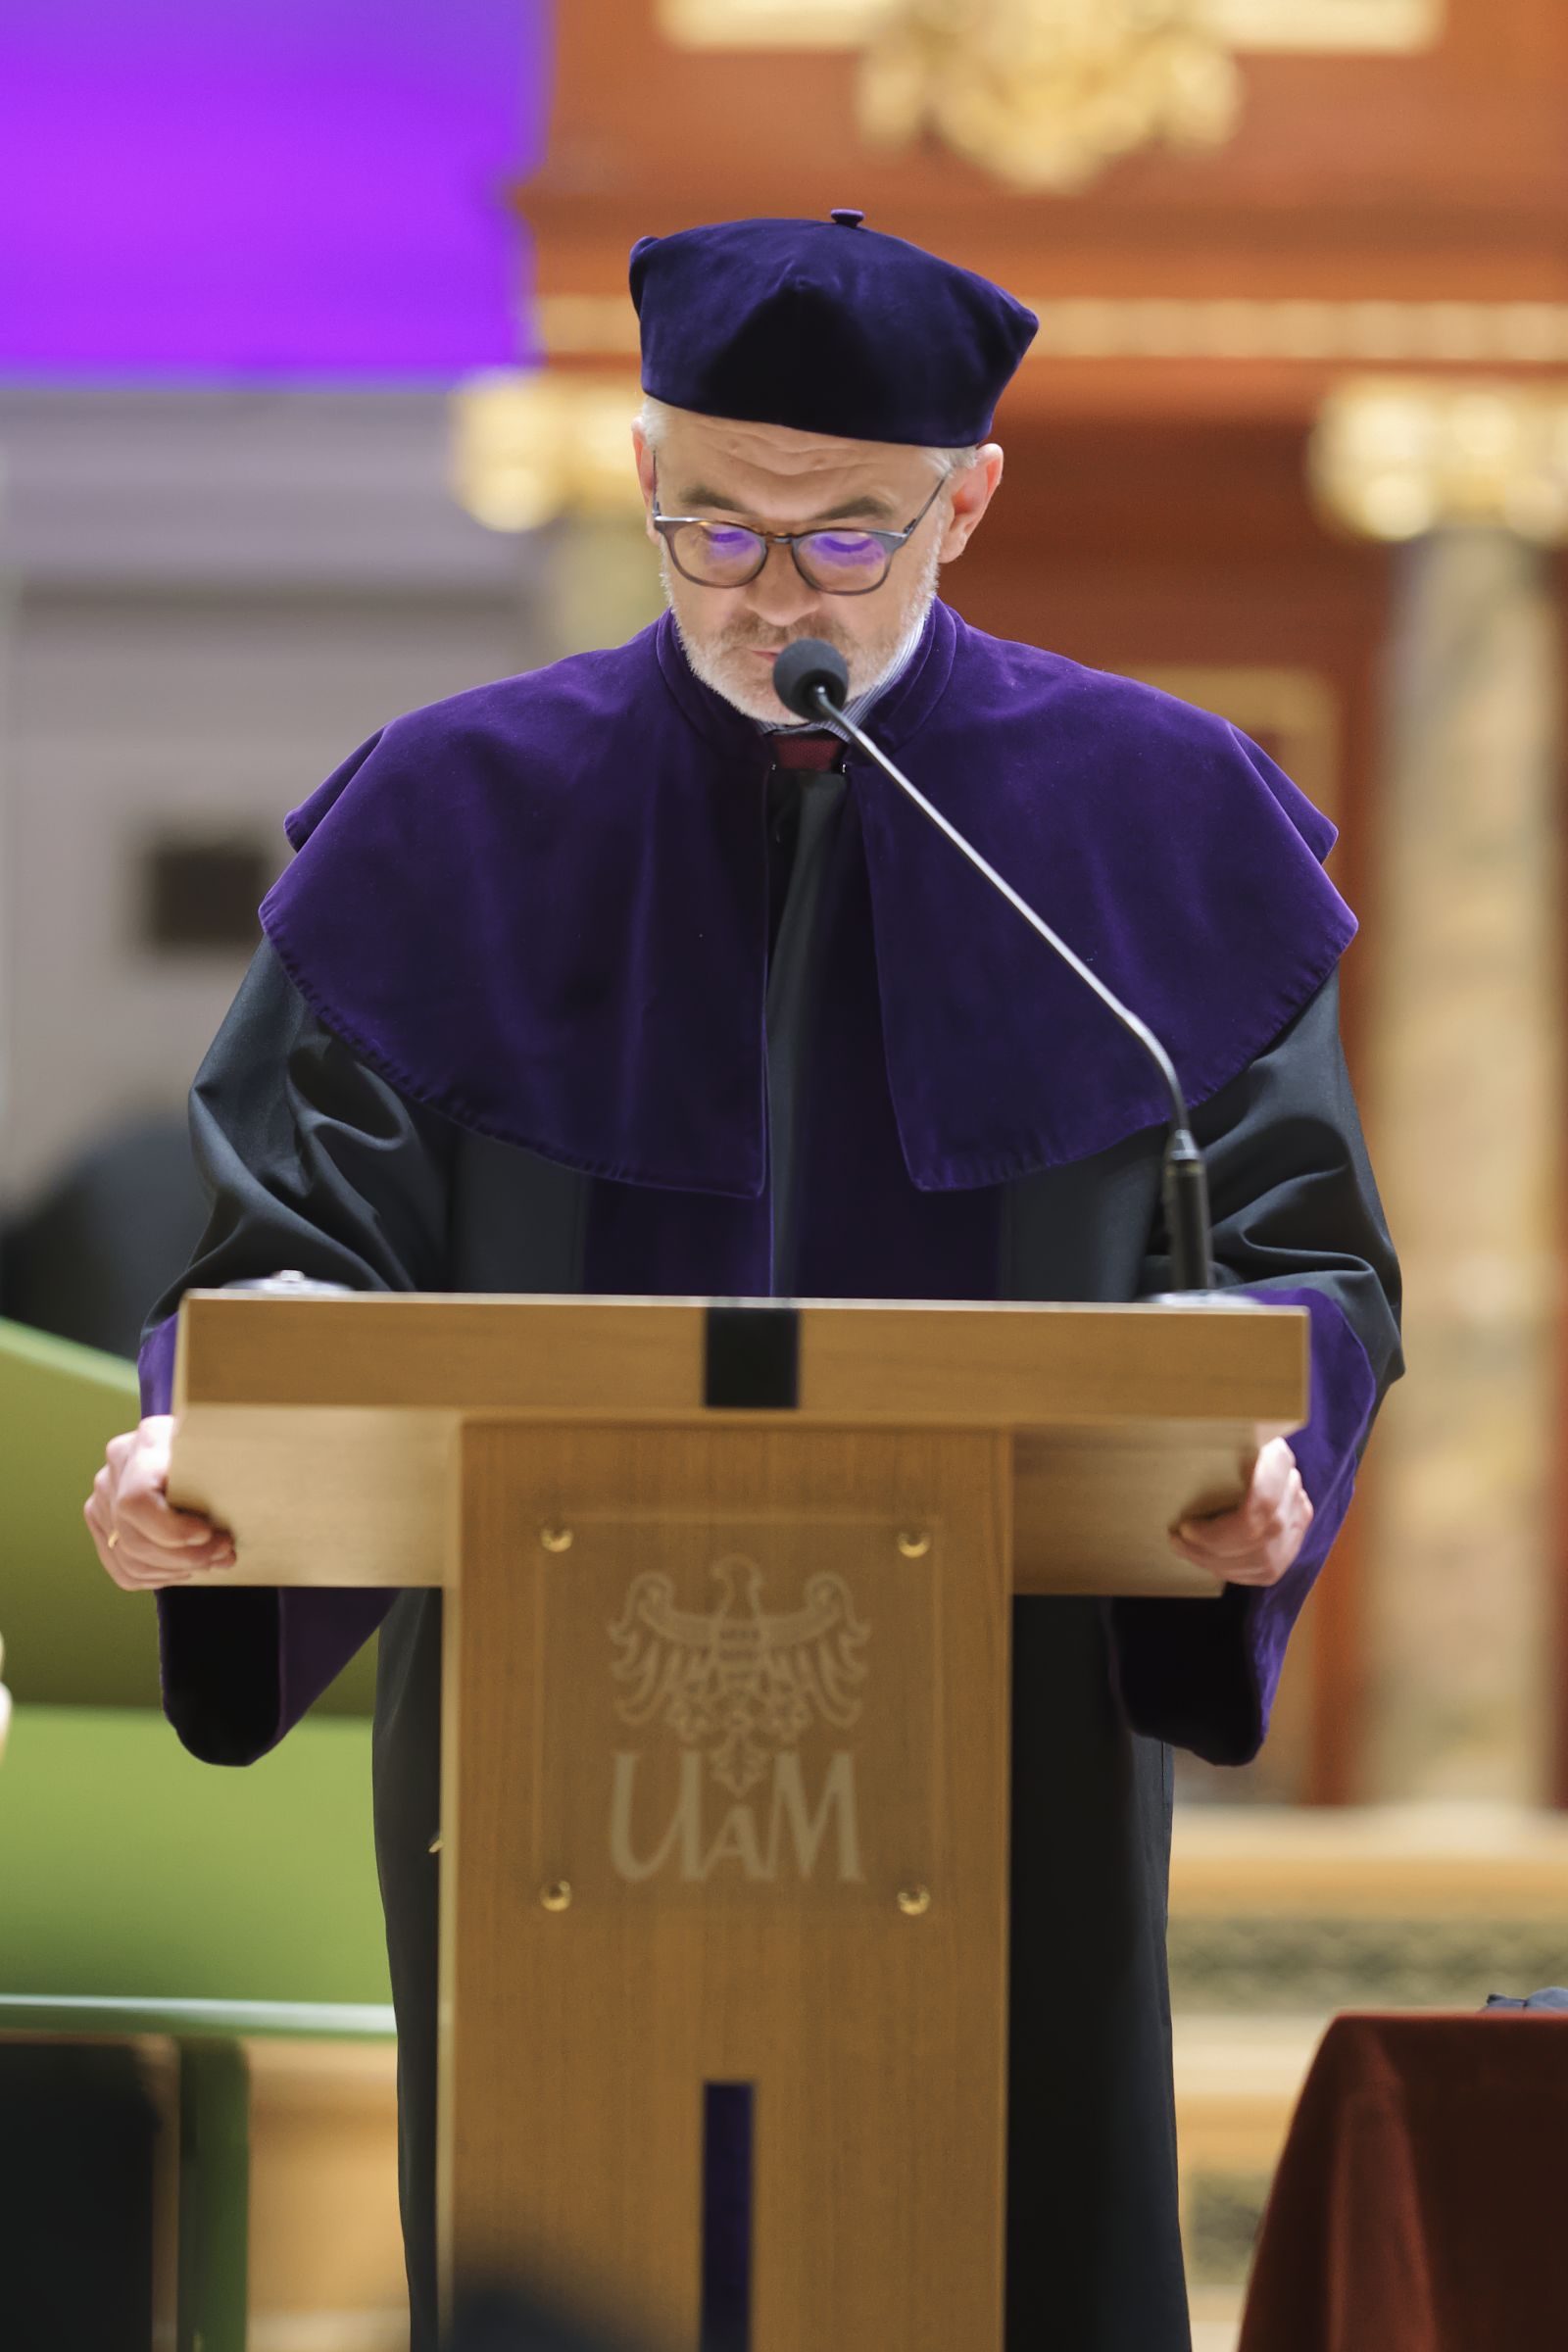 Prof. Jerzy Borowczyk stoi na mównicy w auli uniwersyteckiej i przemawia do mikrofonu, ubrany jest w fioletową togę.